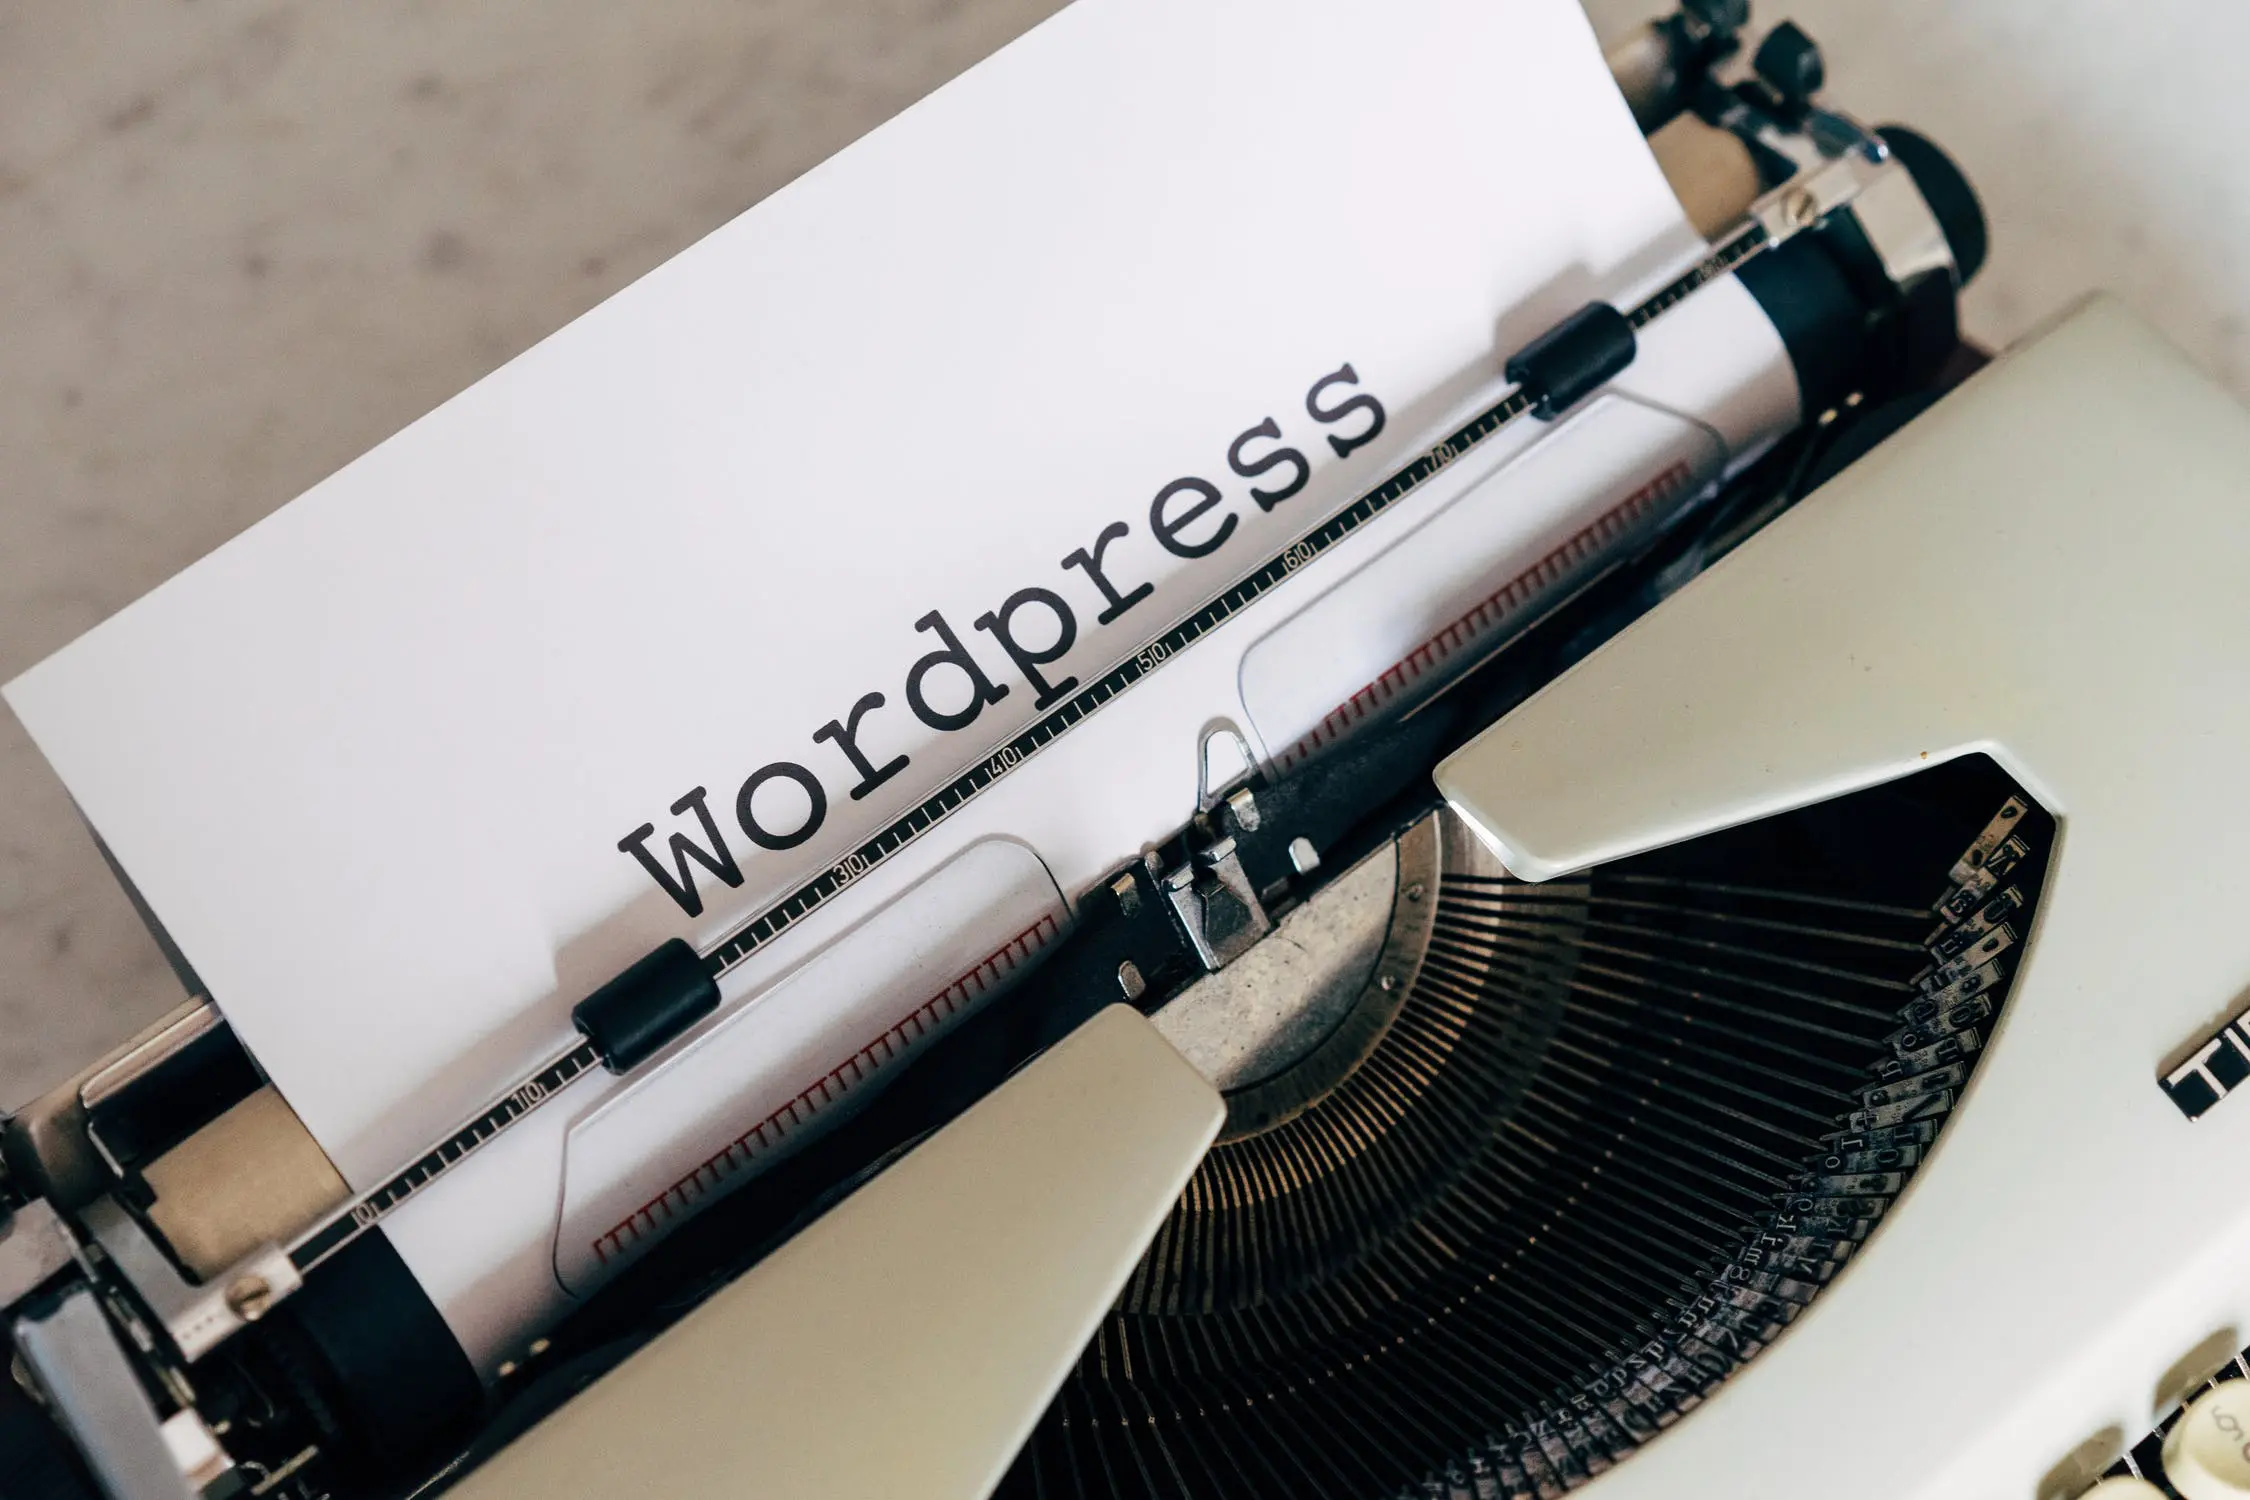 Admin WordPress